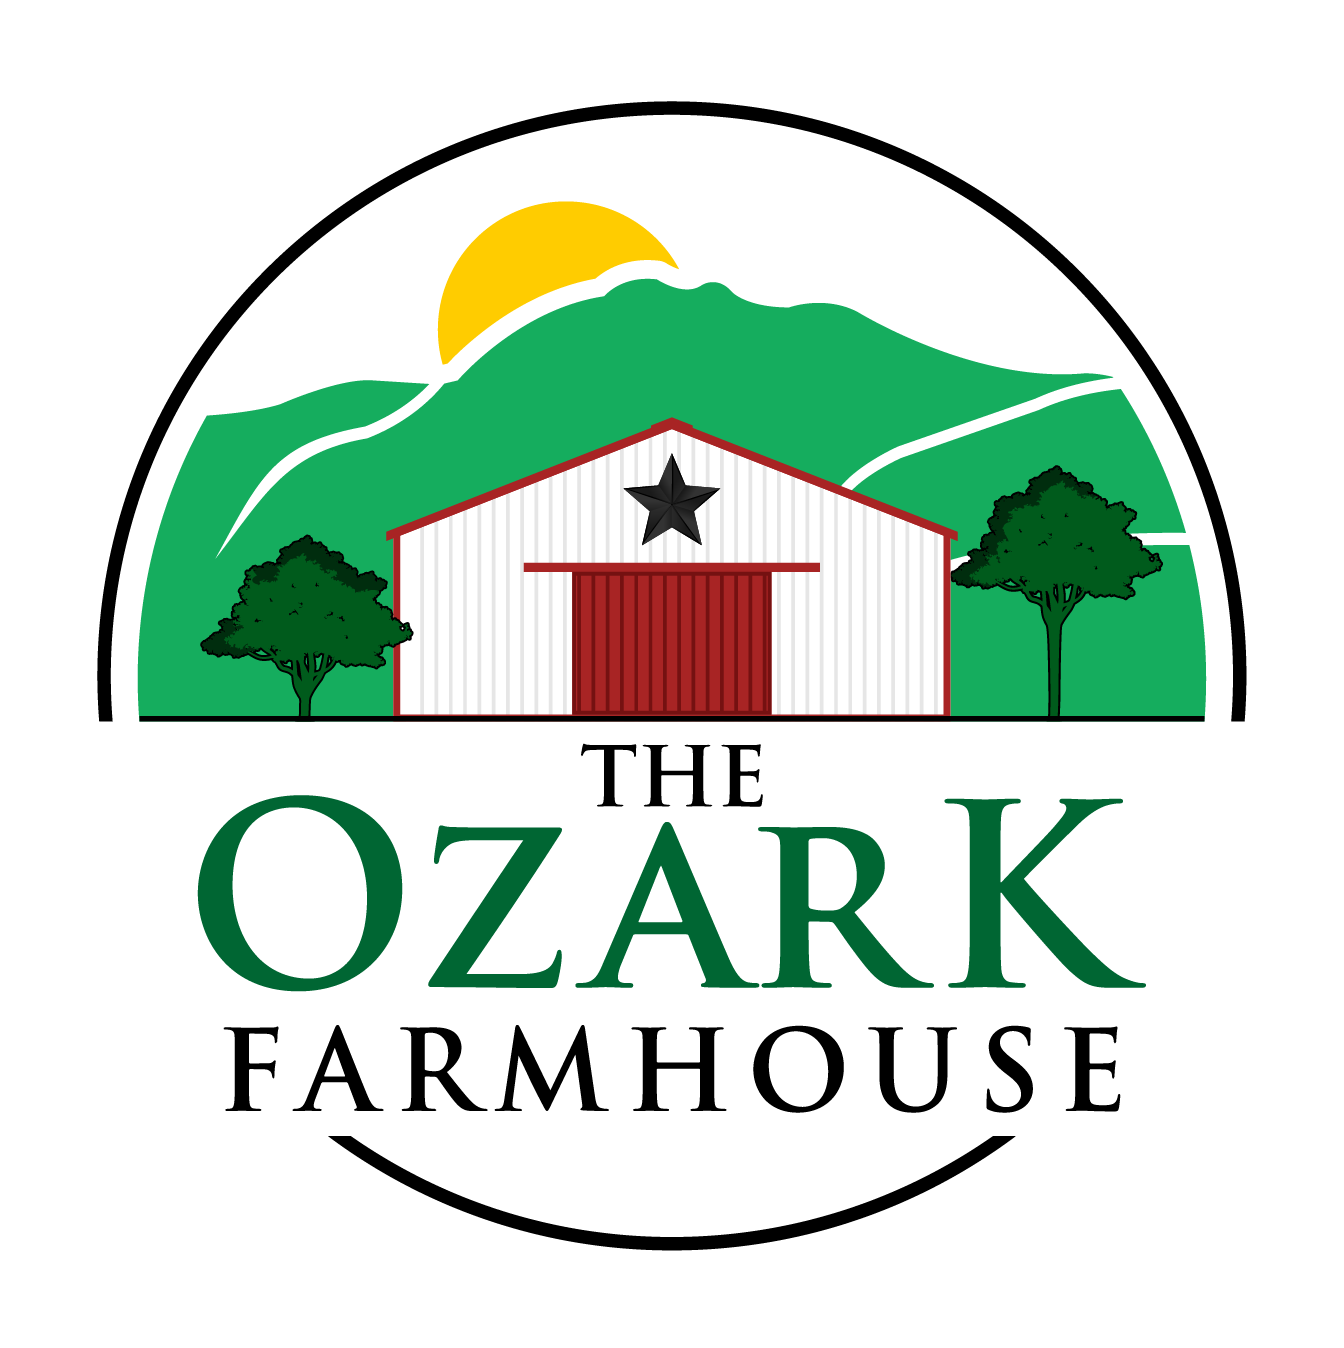 The Ozark Farmhouse